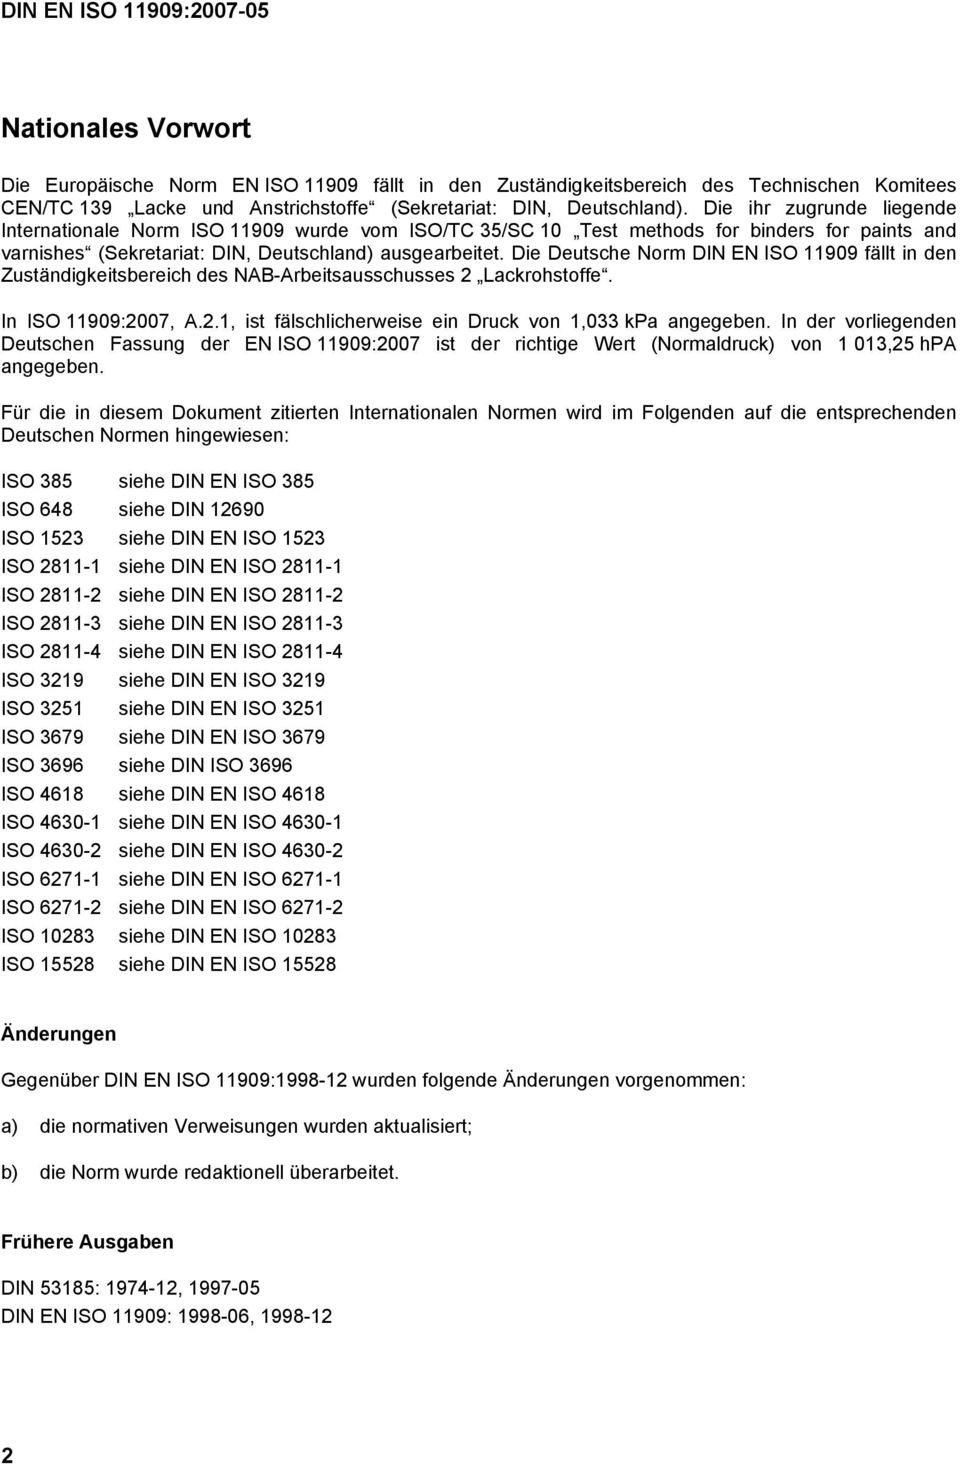 Die Deutsche Norm DIN EN ISO 11909 fällt in den Zuständigkeitsbereich des NAB-Arbeitsausschusses 2 Lackrohstoffe. In ISO 11909:2007, A.2.1, ist fälschlicherweise ein Druck von 1,033 kpa angegeben.